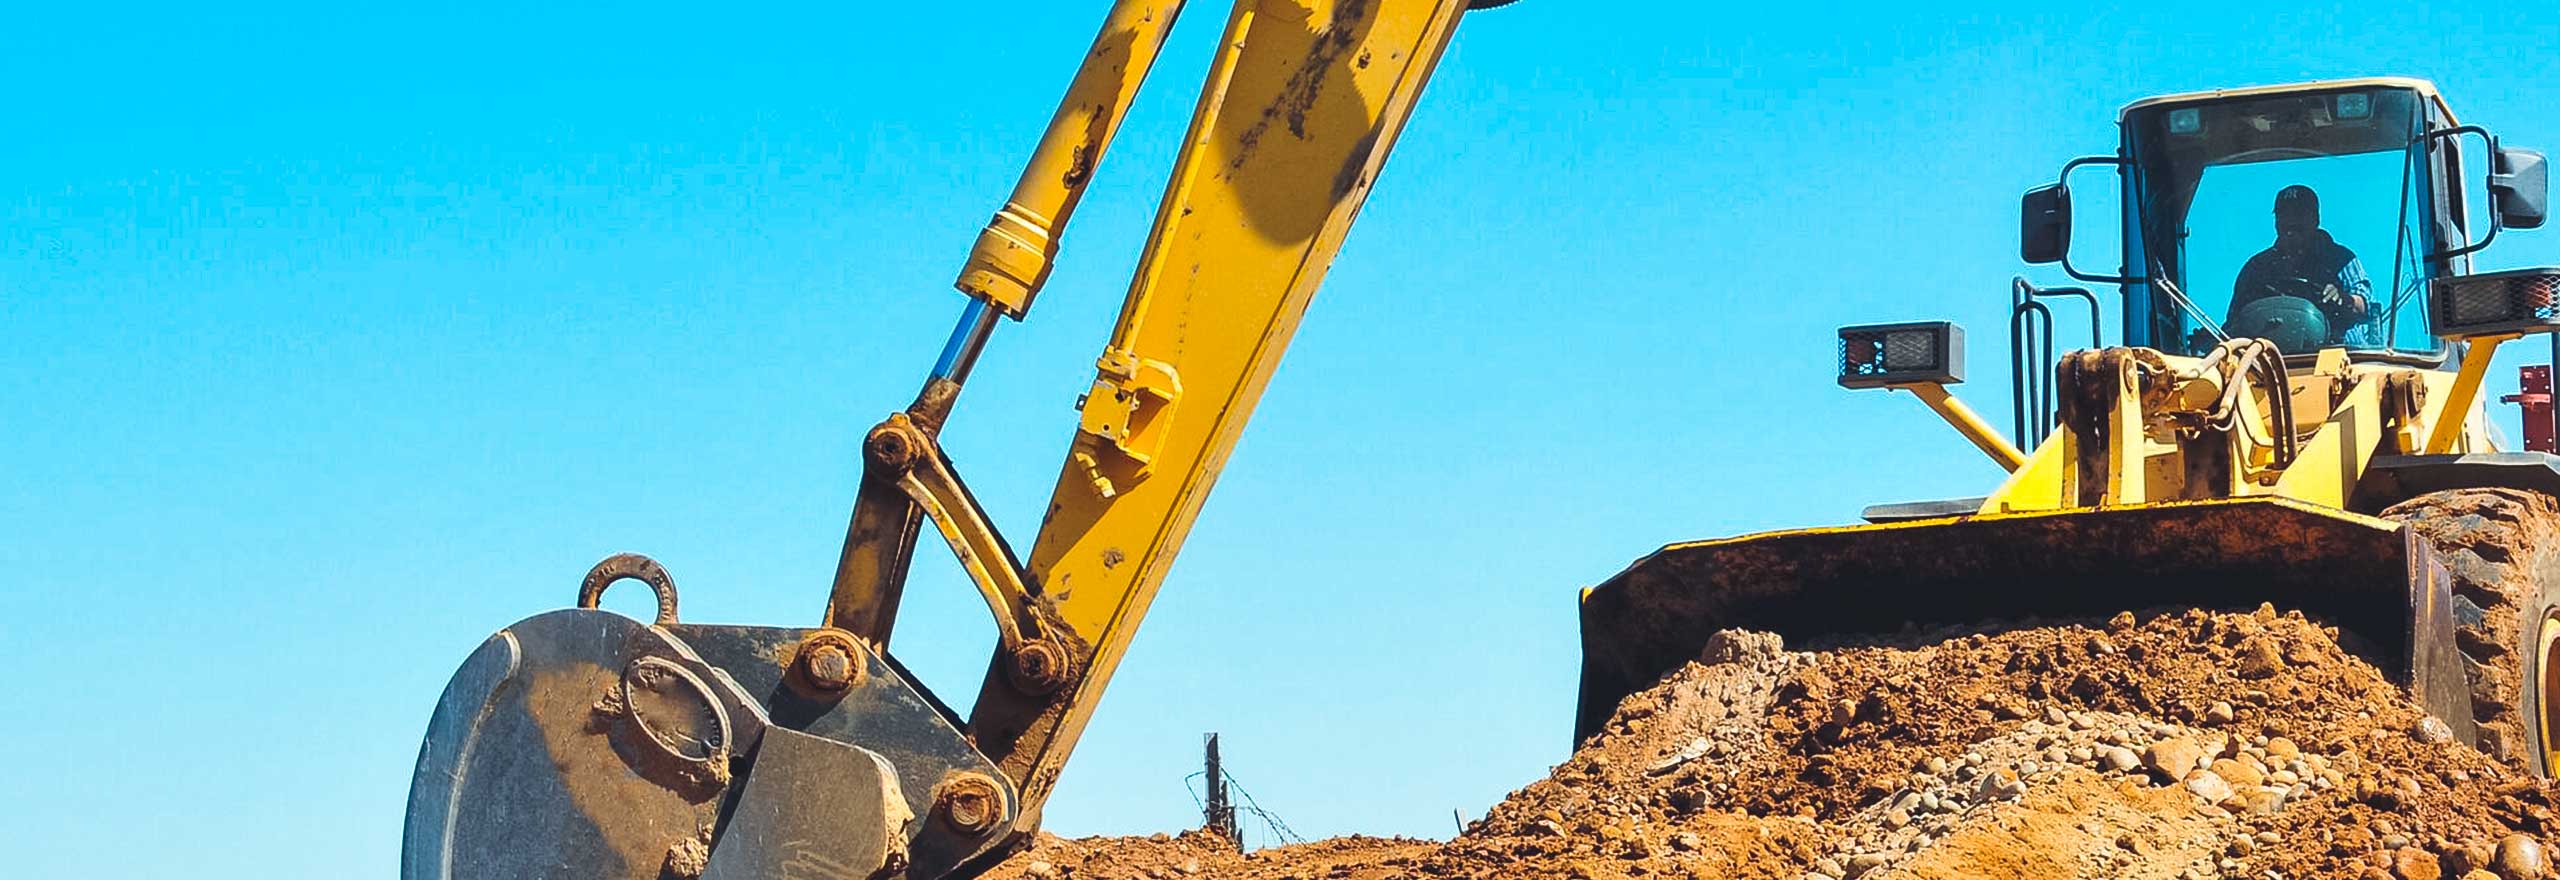 Équipement de construction creusant sur un site